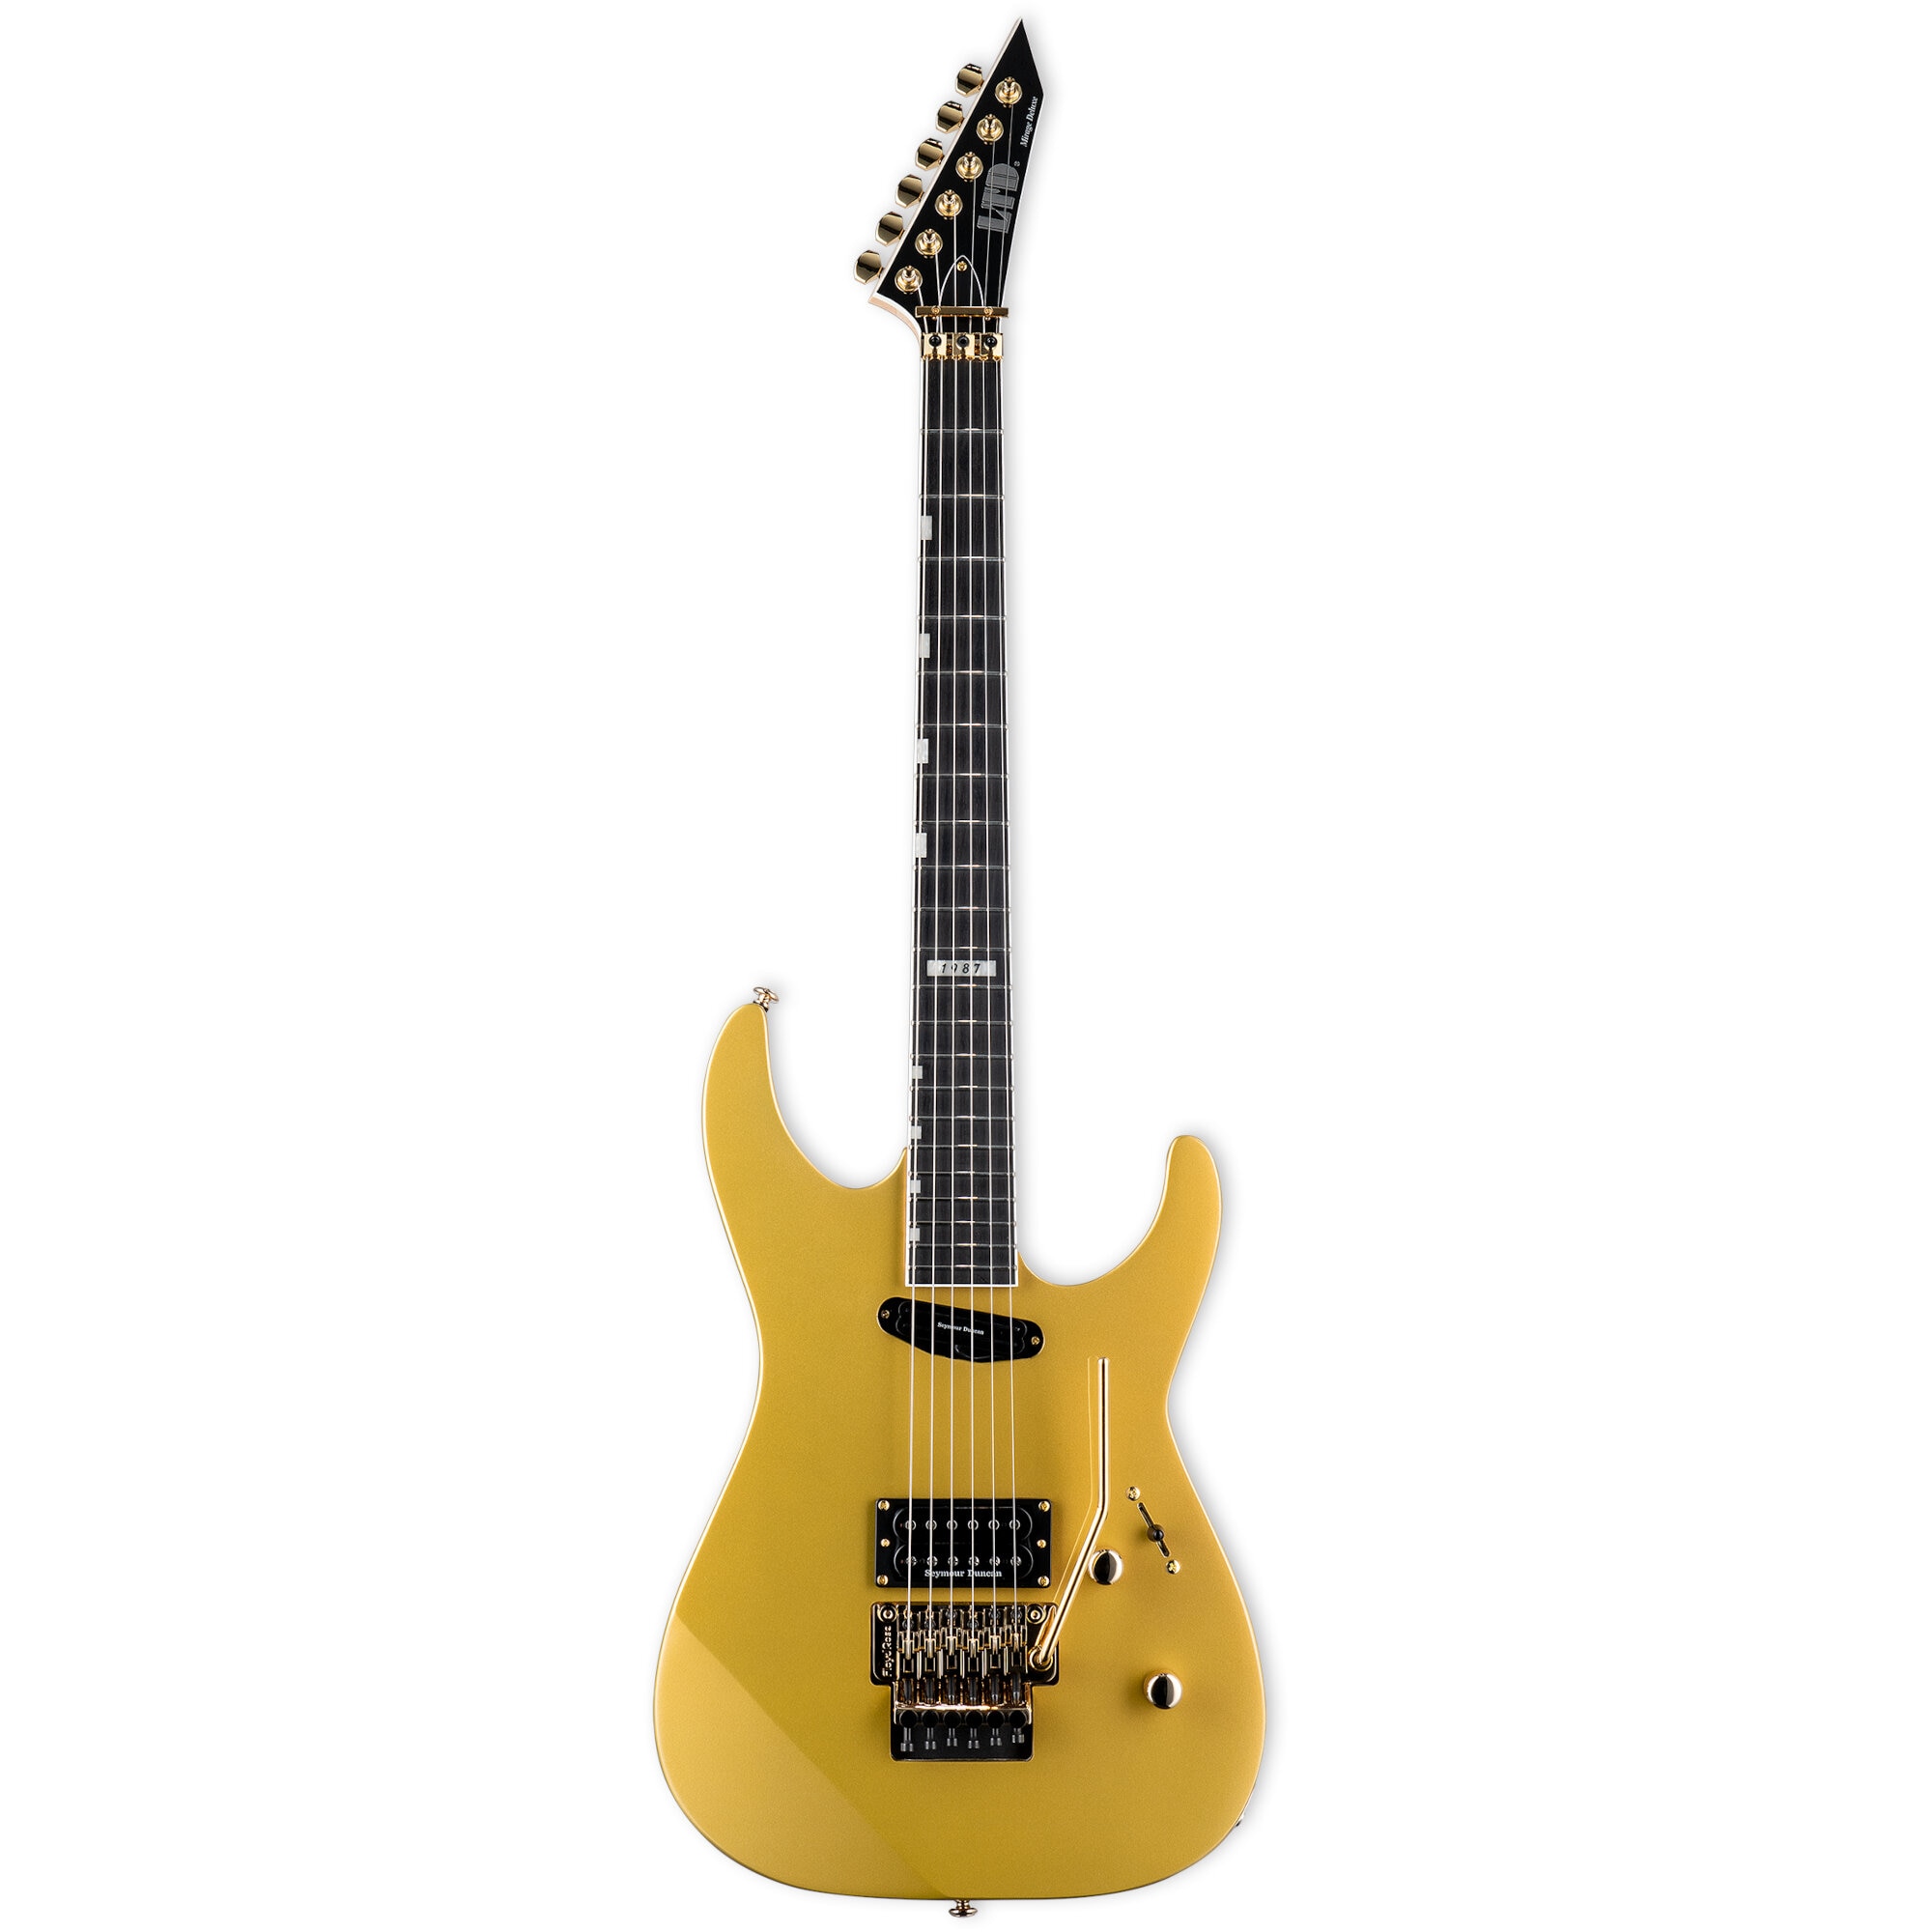 Mirage Deluxe '87 Metallic Gold elektrische gitaar